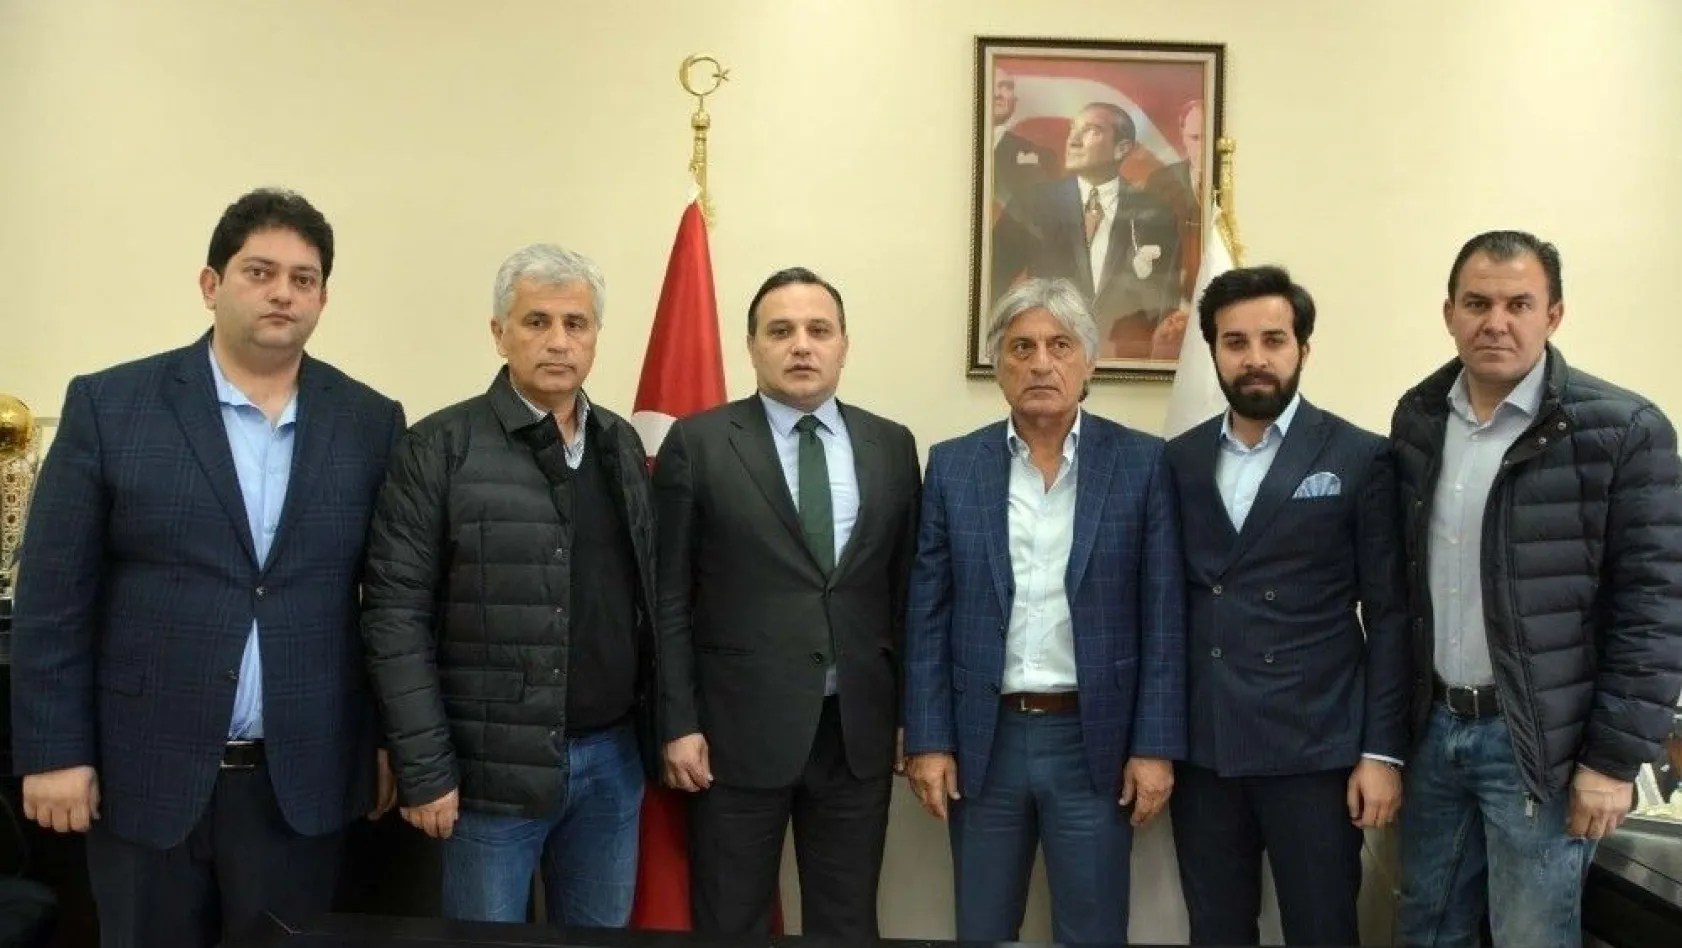 B.B.Erzurumspor Teknik Direktörlüğüne getirilen Kılıç: 'Erzurum'da şampiyonluğu kucaklamak istiyoruz'
